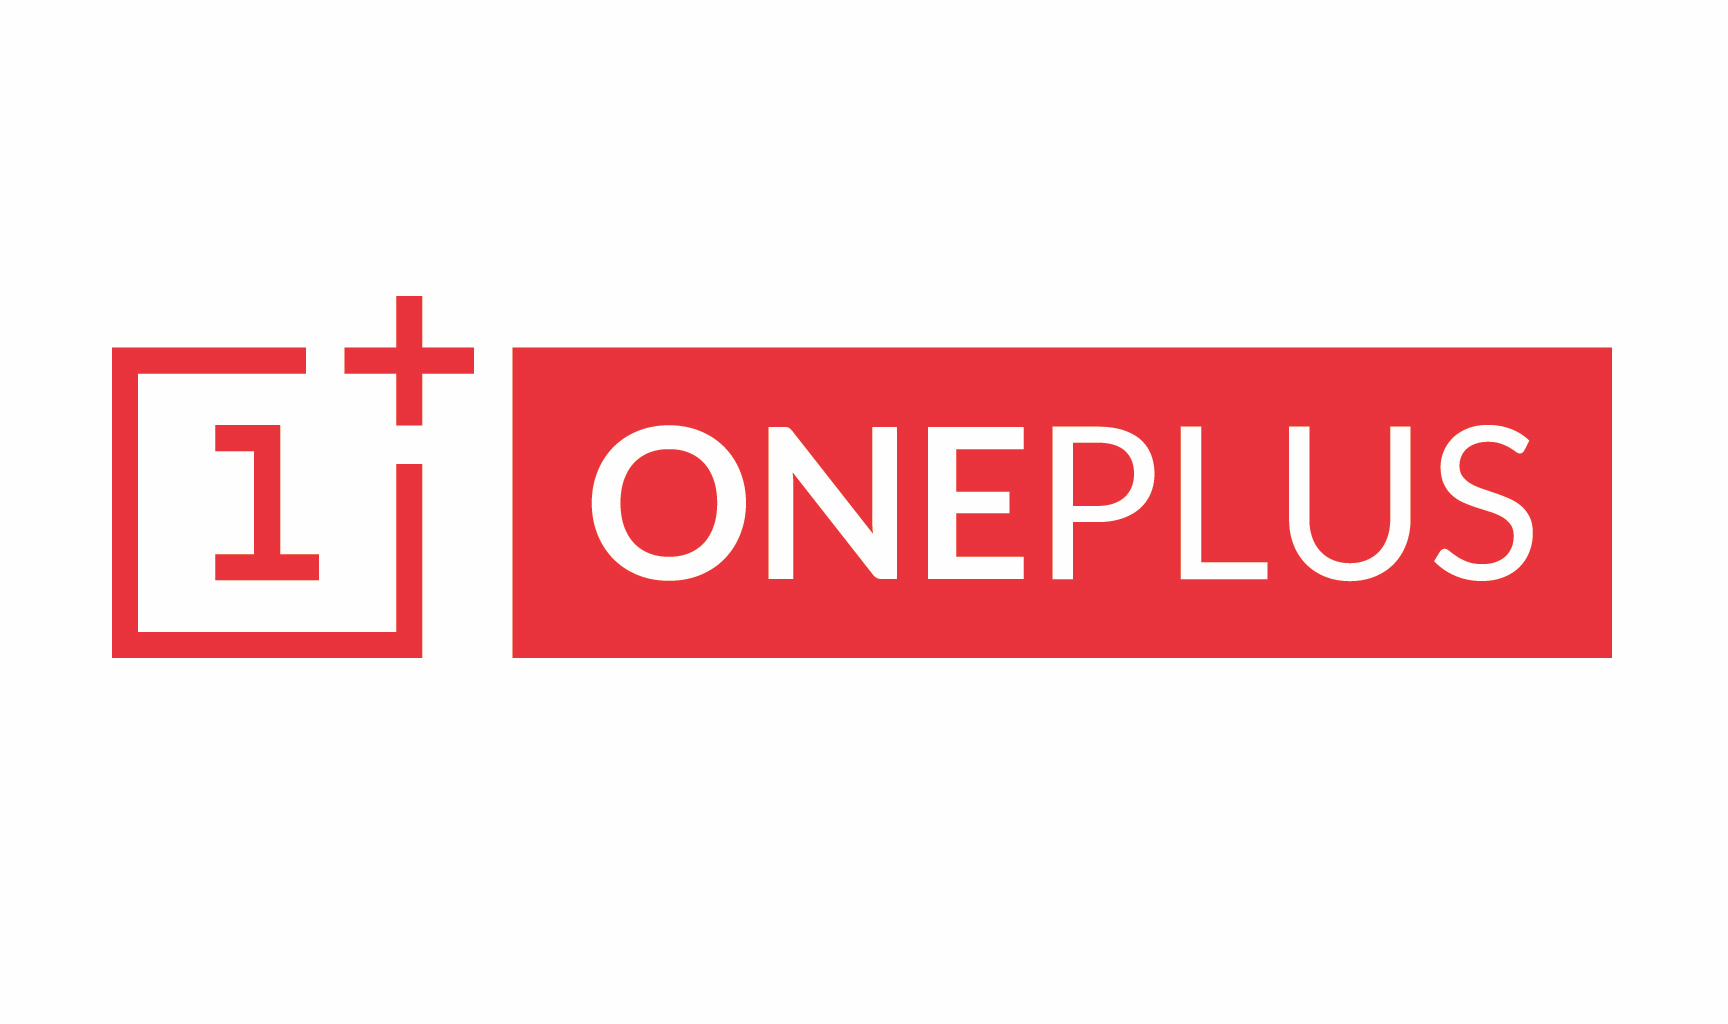 وان پلاس (OnePlus) اطلاعات دریافتی از کاربران را محدود خواهد کرد